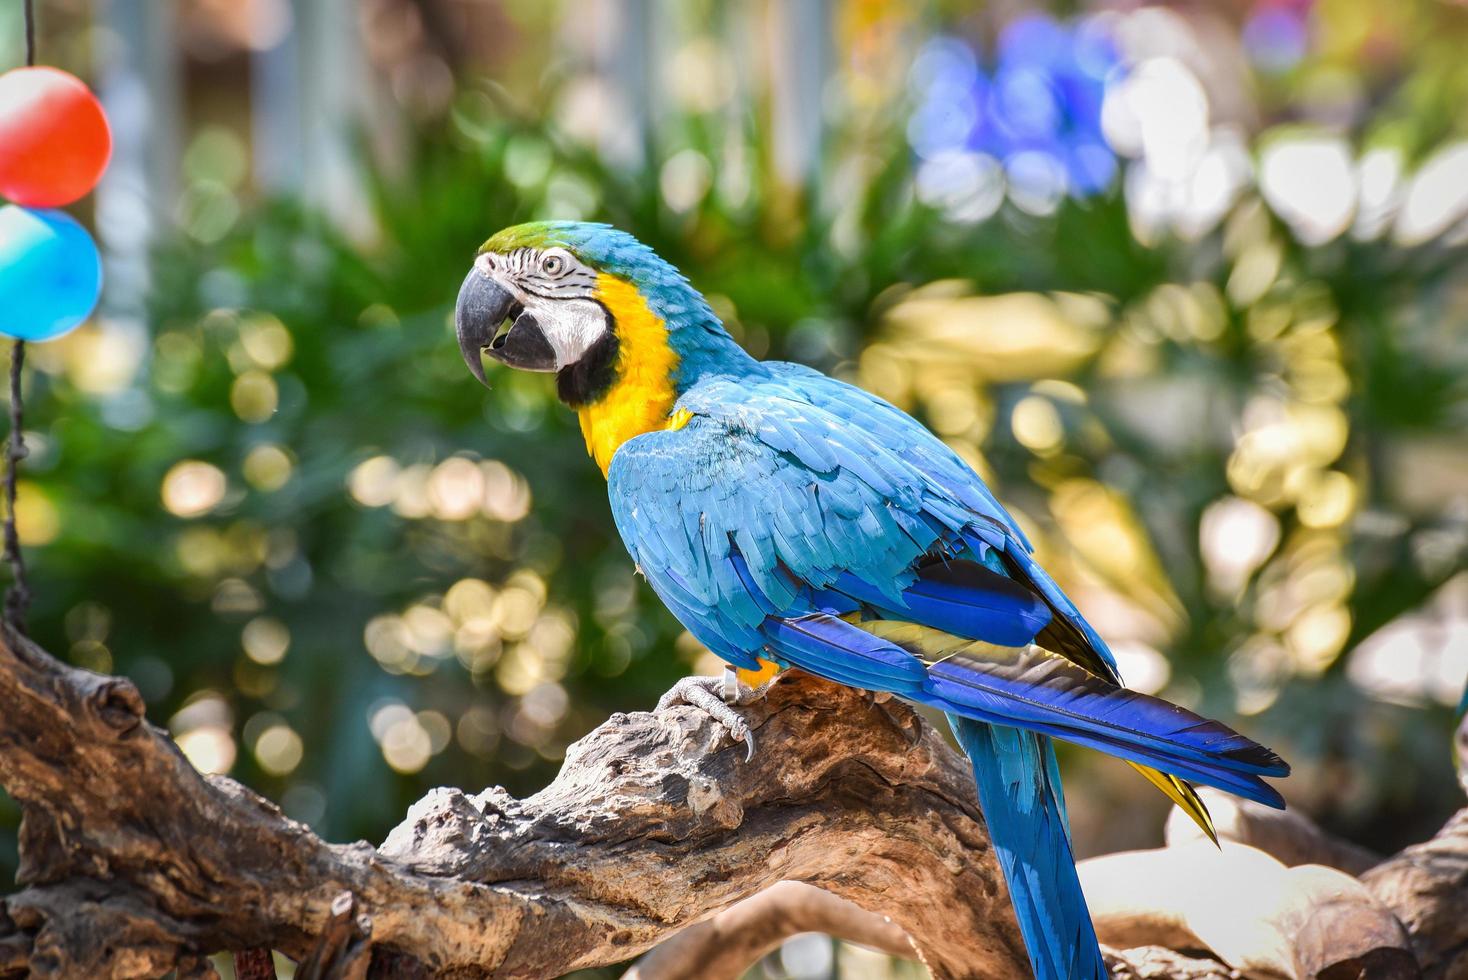 papagaio de pássaro arara no galho de árvore na natureza fundo verde asa amarela e azul arara ara ararauna foto